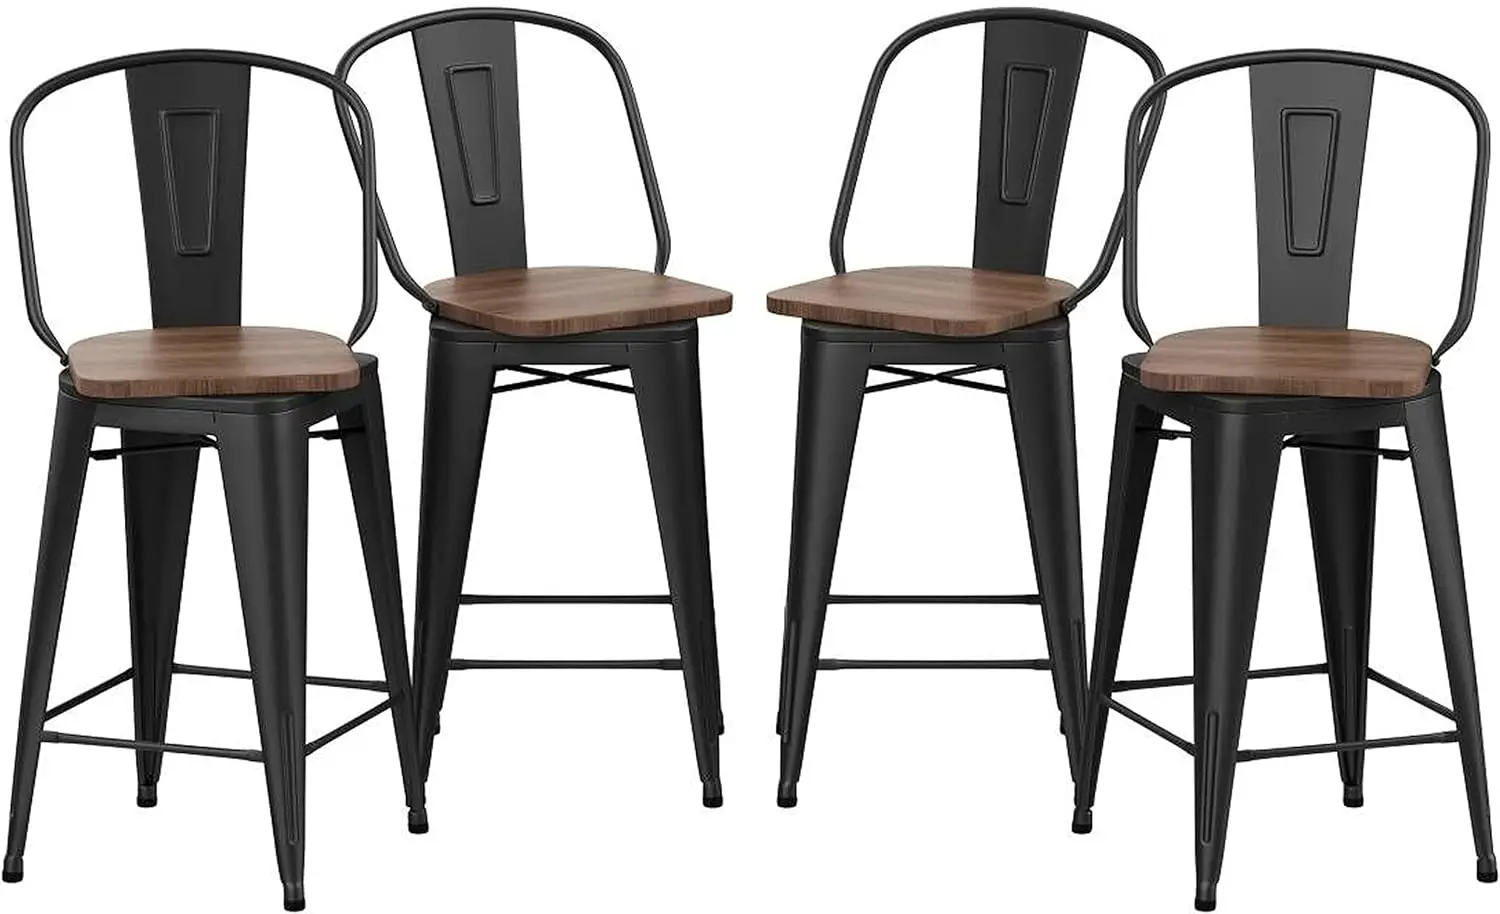 

Поворотные металлические барные стулья, кухонная барная стойка, барные стулья с высокой спинкой, набор из 4 штук (матовый черный деревянный, поворотный 26 дюймов)